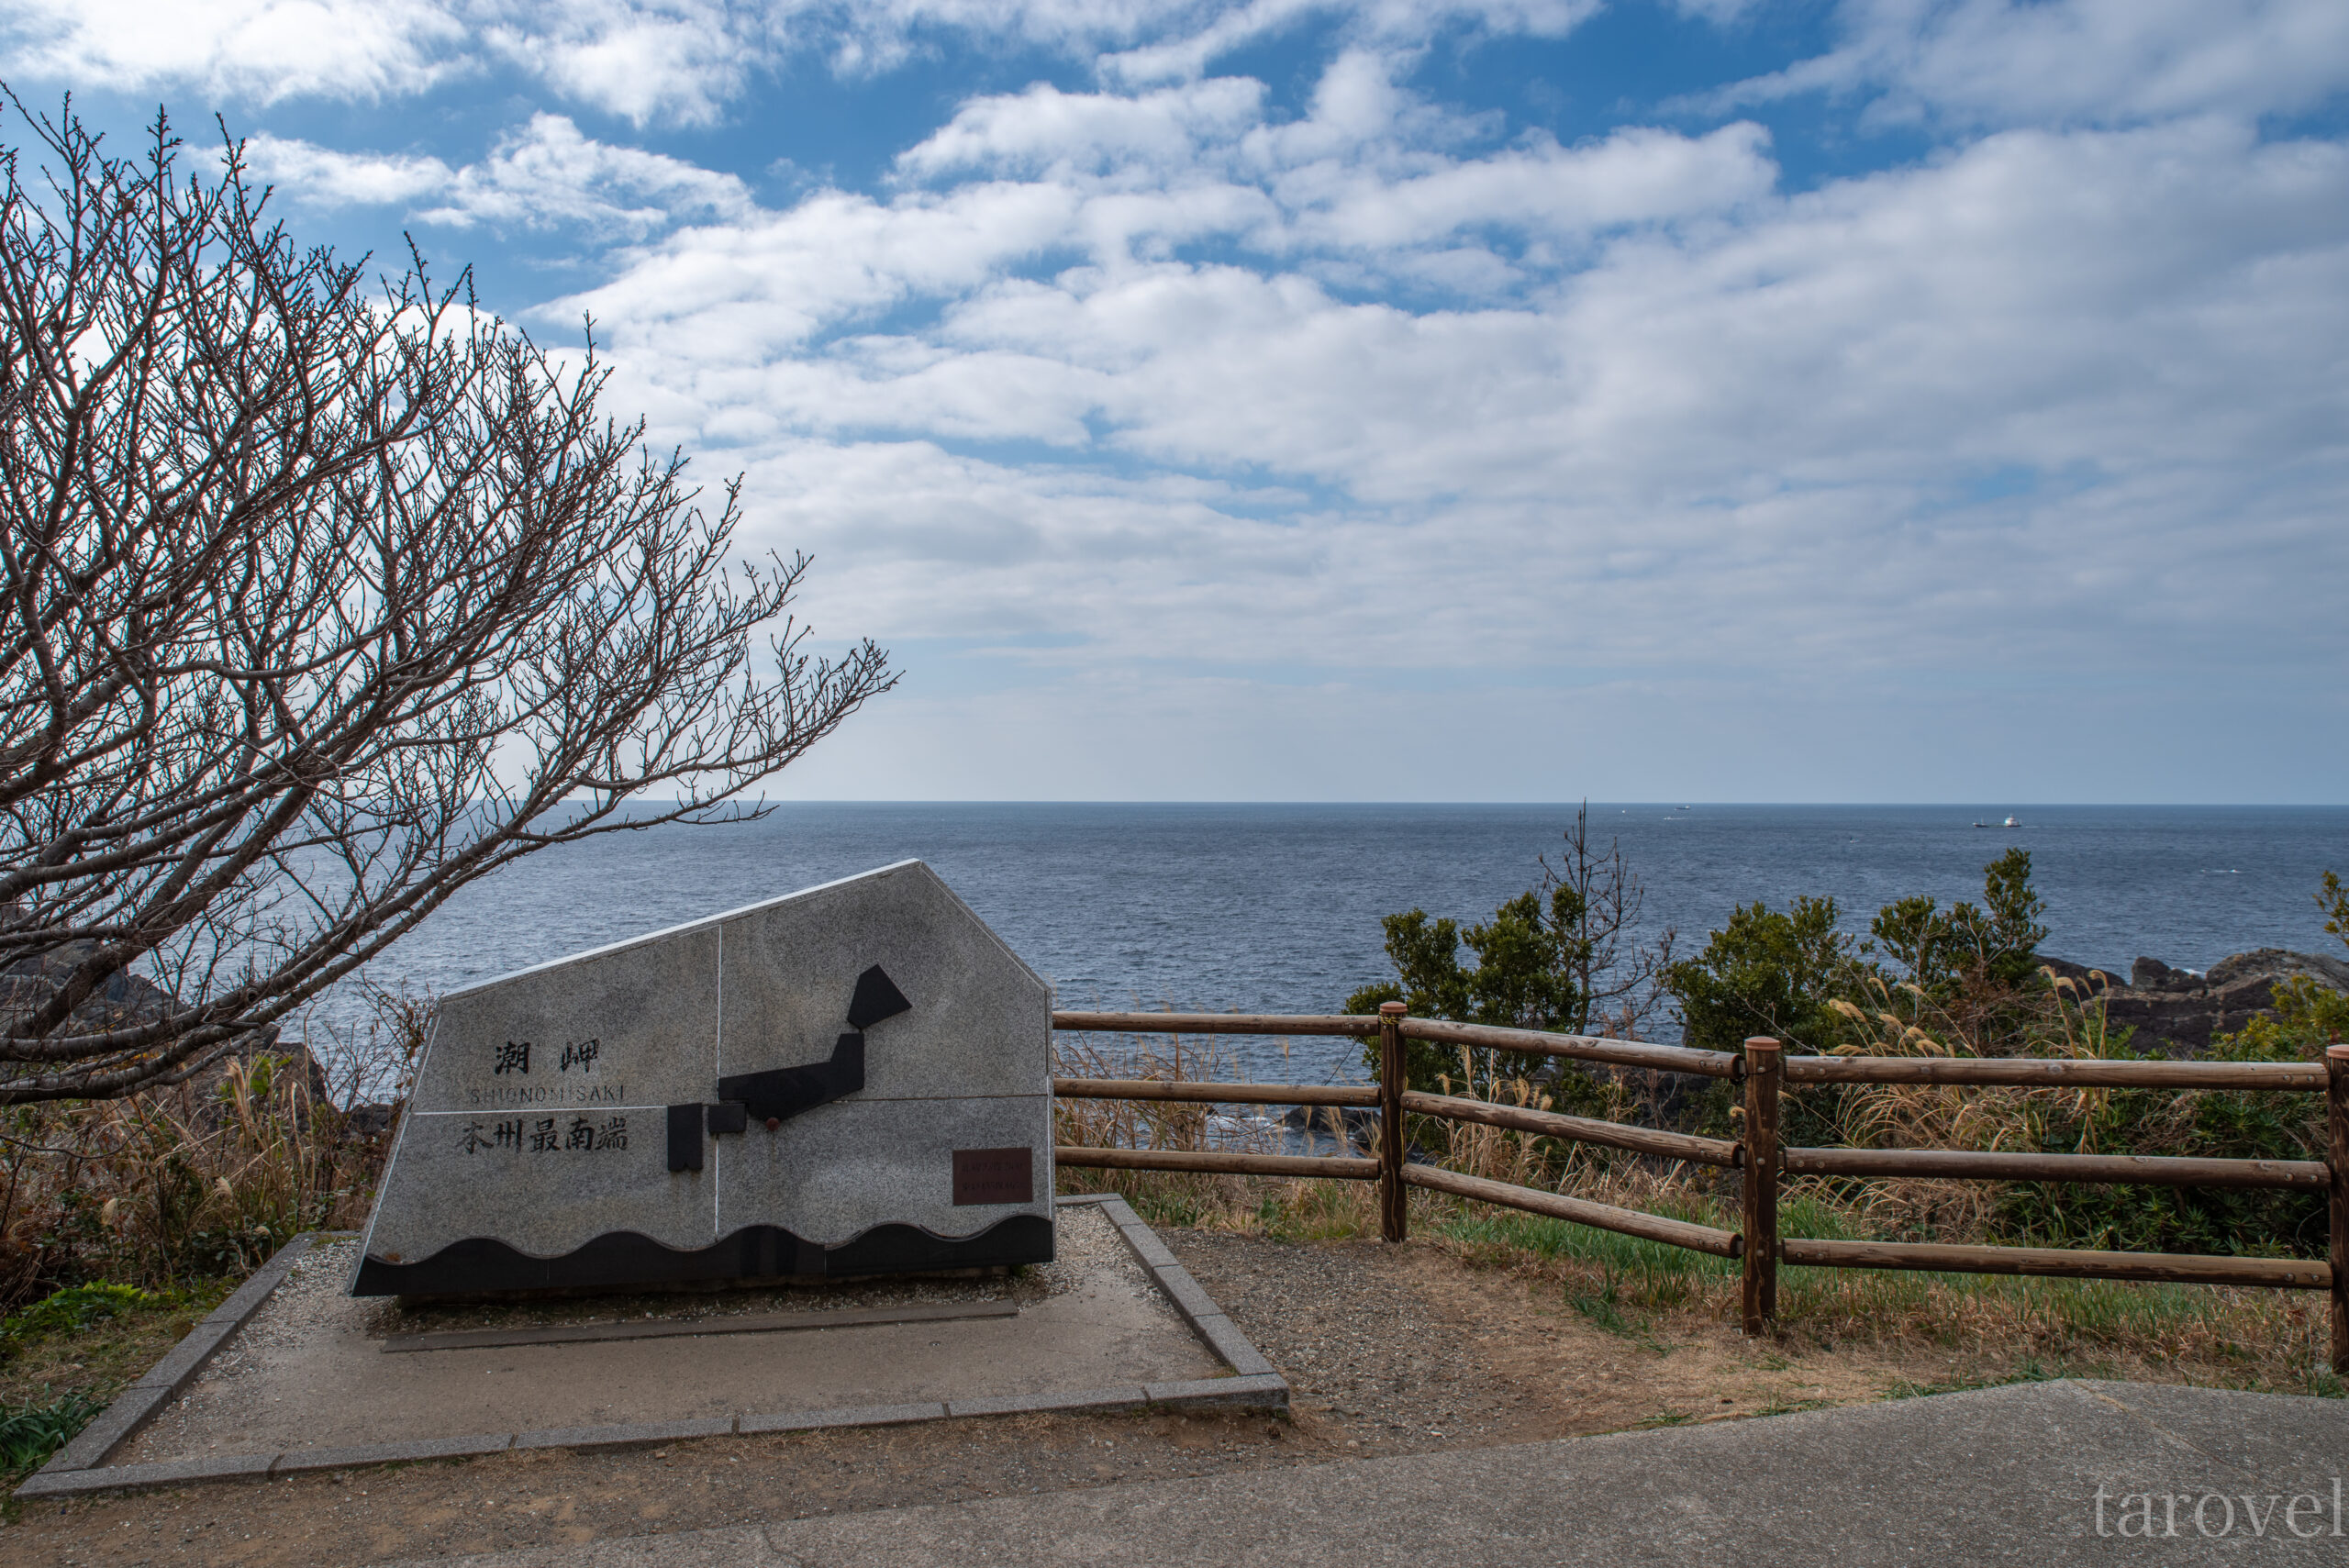 本州最南端の絶景を見に行こう。和歌山県の潮岬への行き方